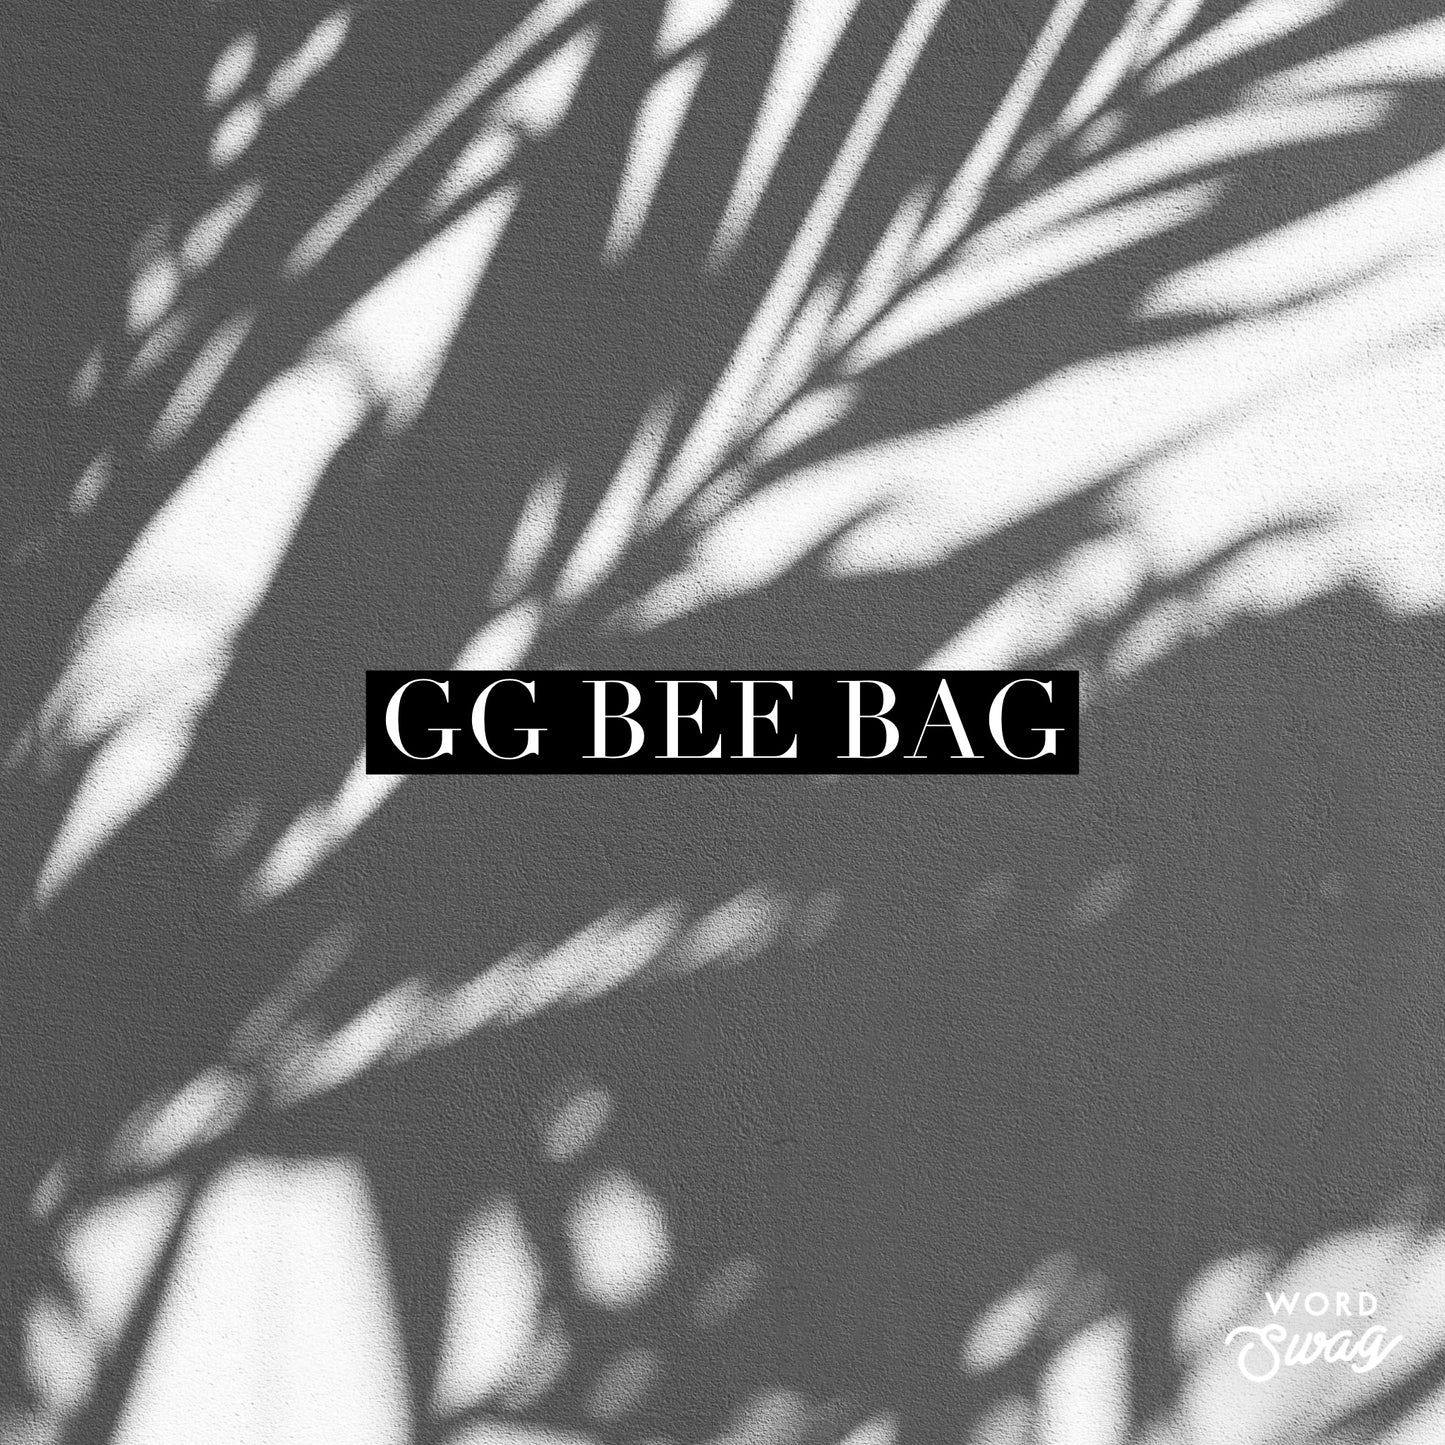 GG Bee Bag